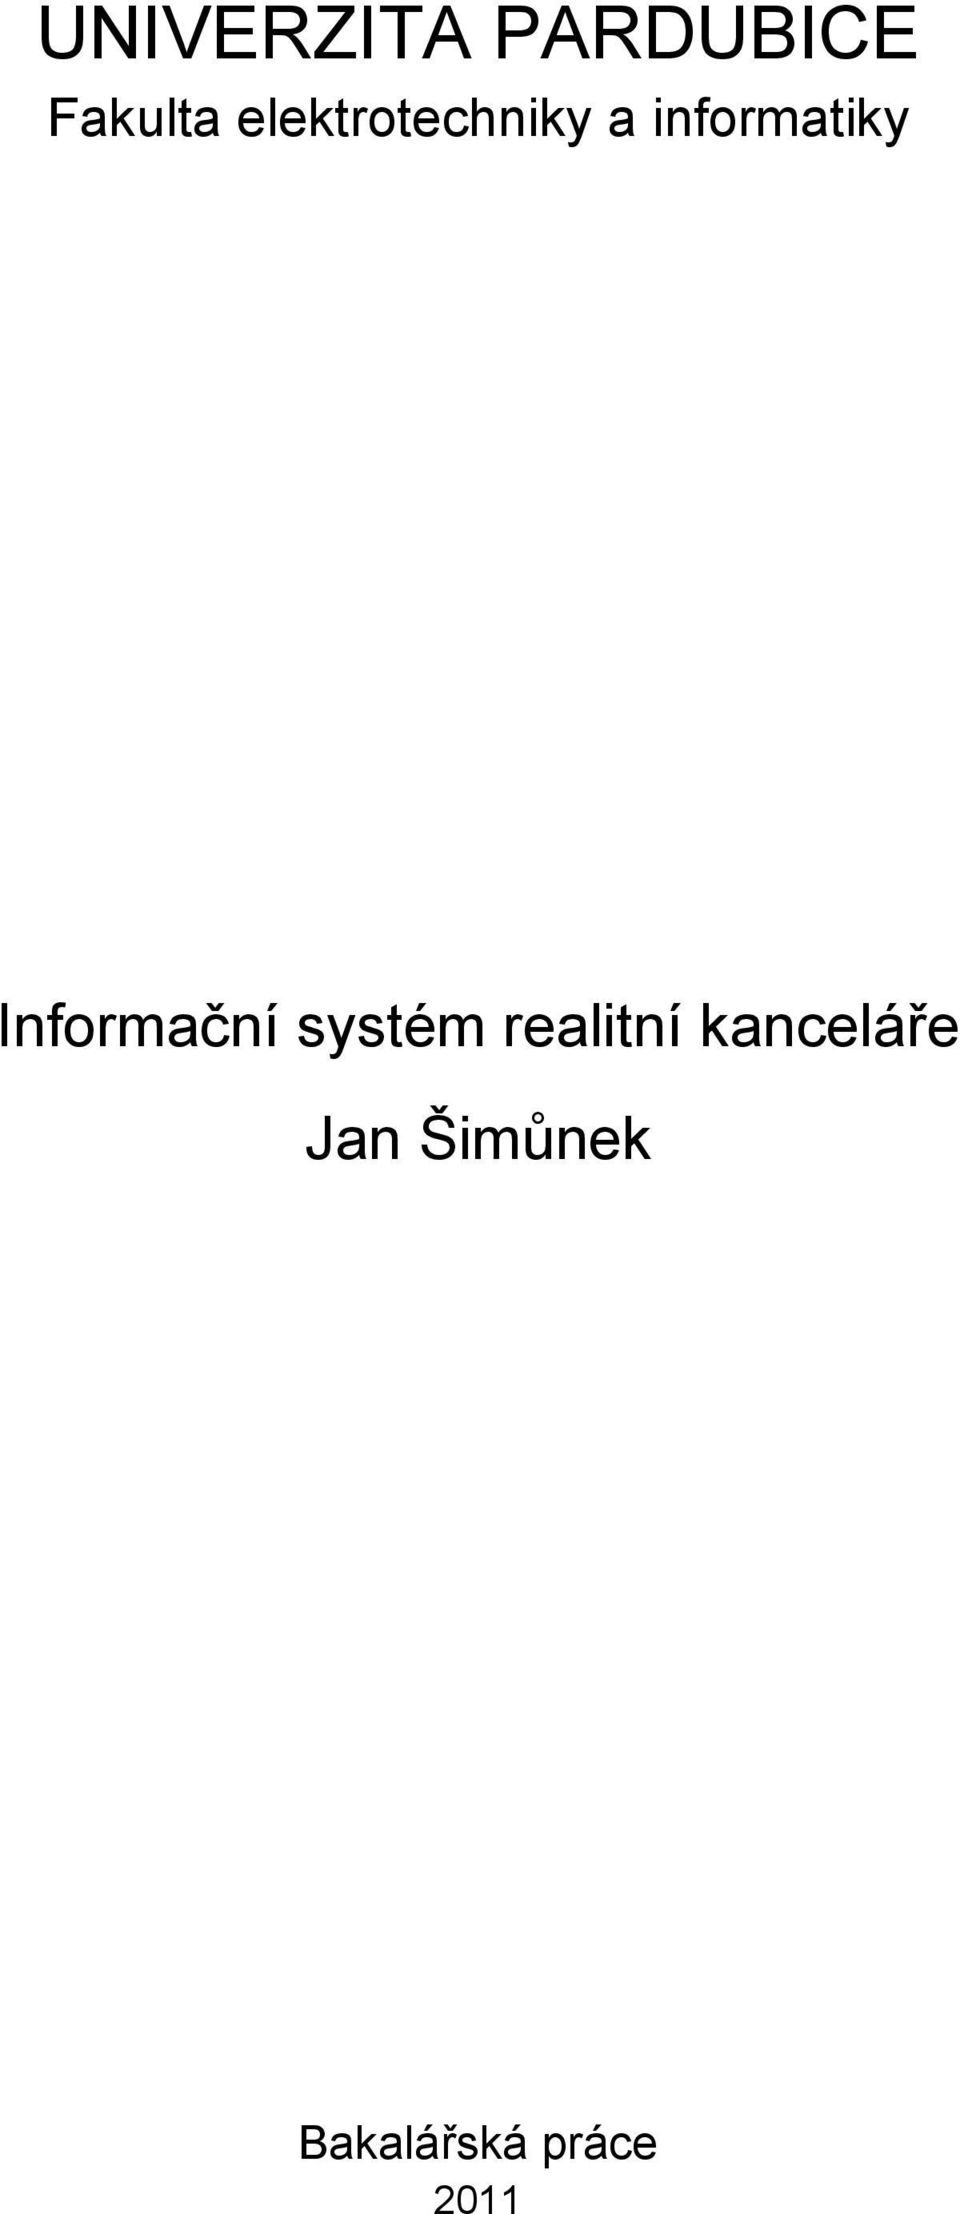 Informační systém realitní